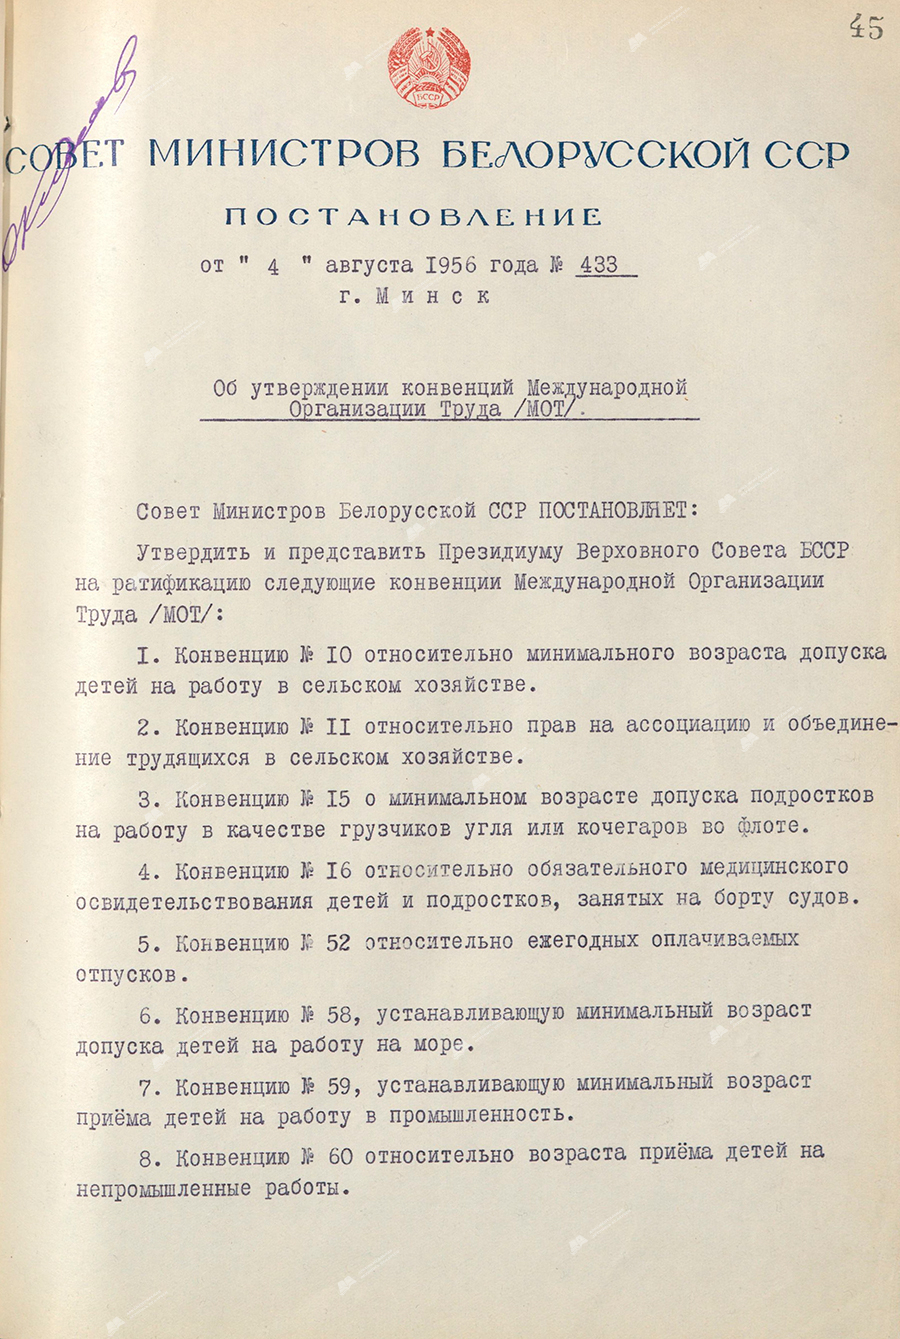 Beschluss Nr. 433 des Ministerrats der Weißrussischen SSR «Über die Genehmigung der Übereinkommen der Internationalen Arbeitsorganisation (ILO)»-с. 0